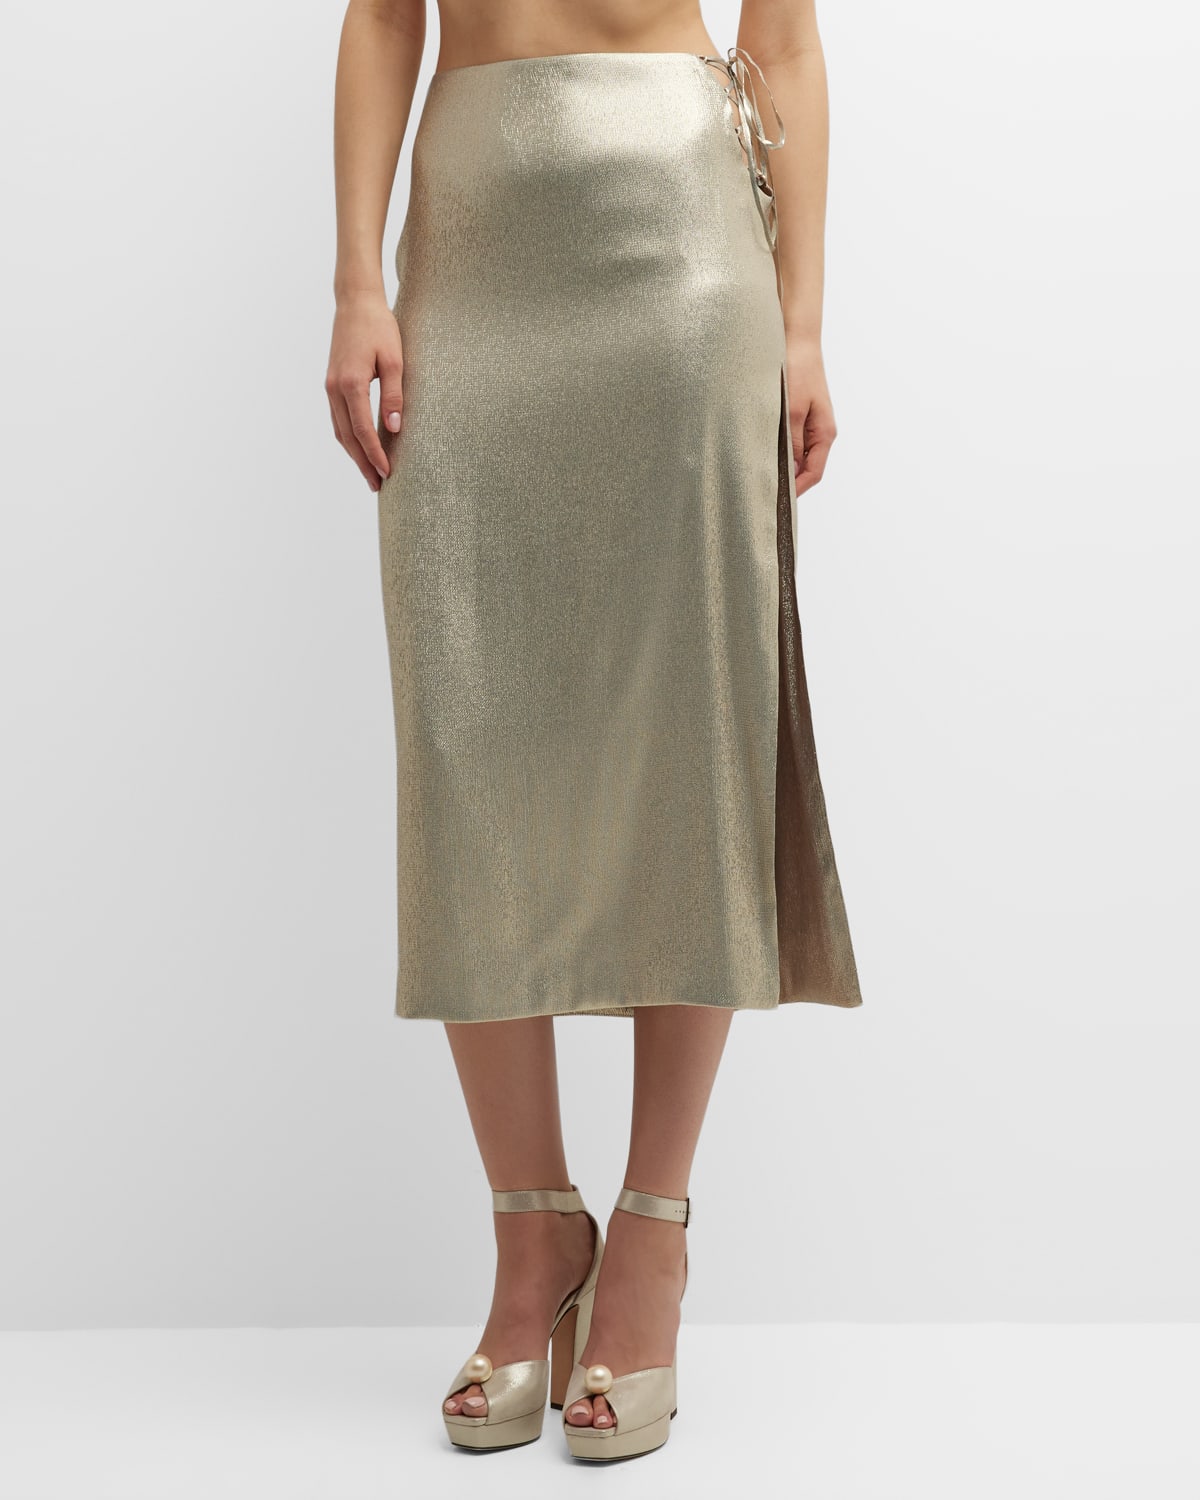 Ale Metallic Lace-Up Side-Slit Midi Skirt